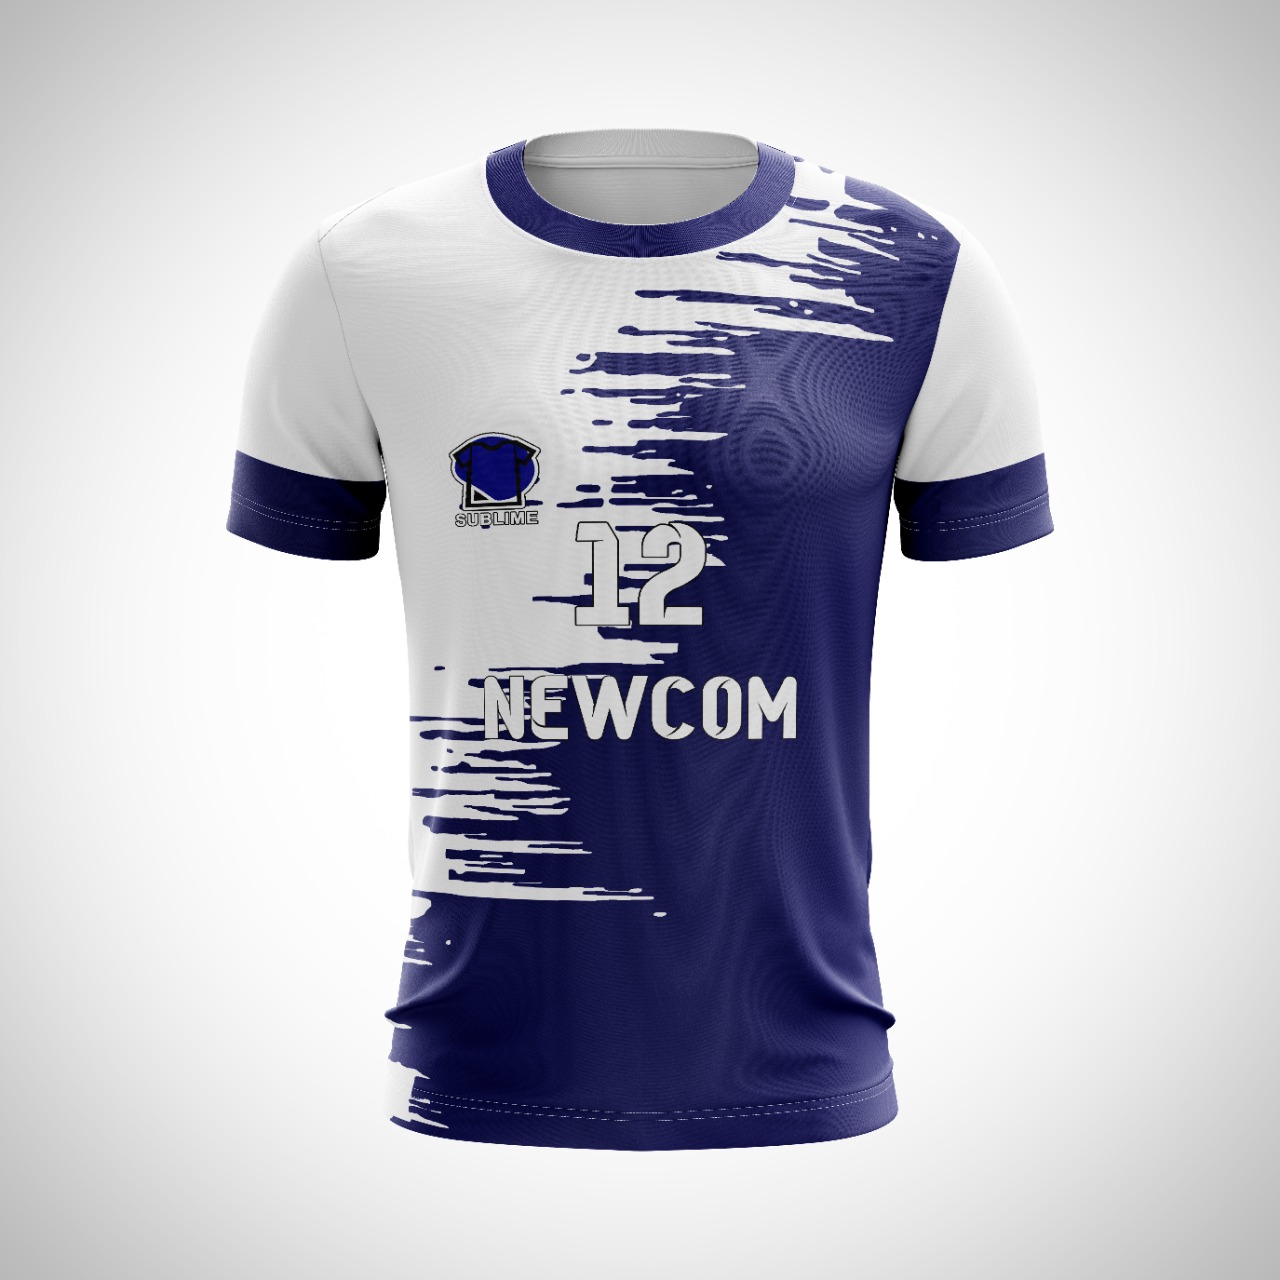 Camisetas de fútbol personalizadas